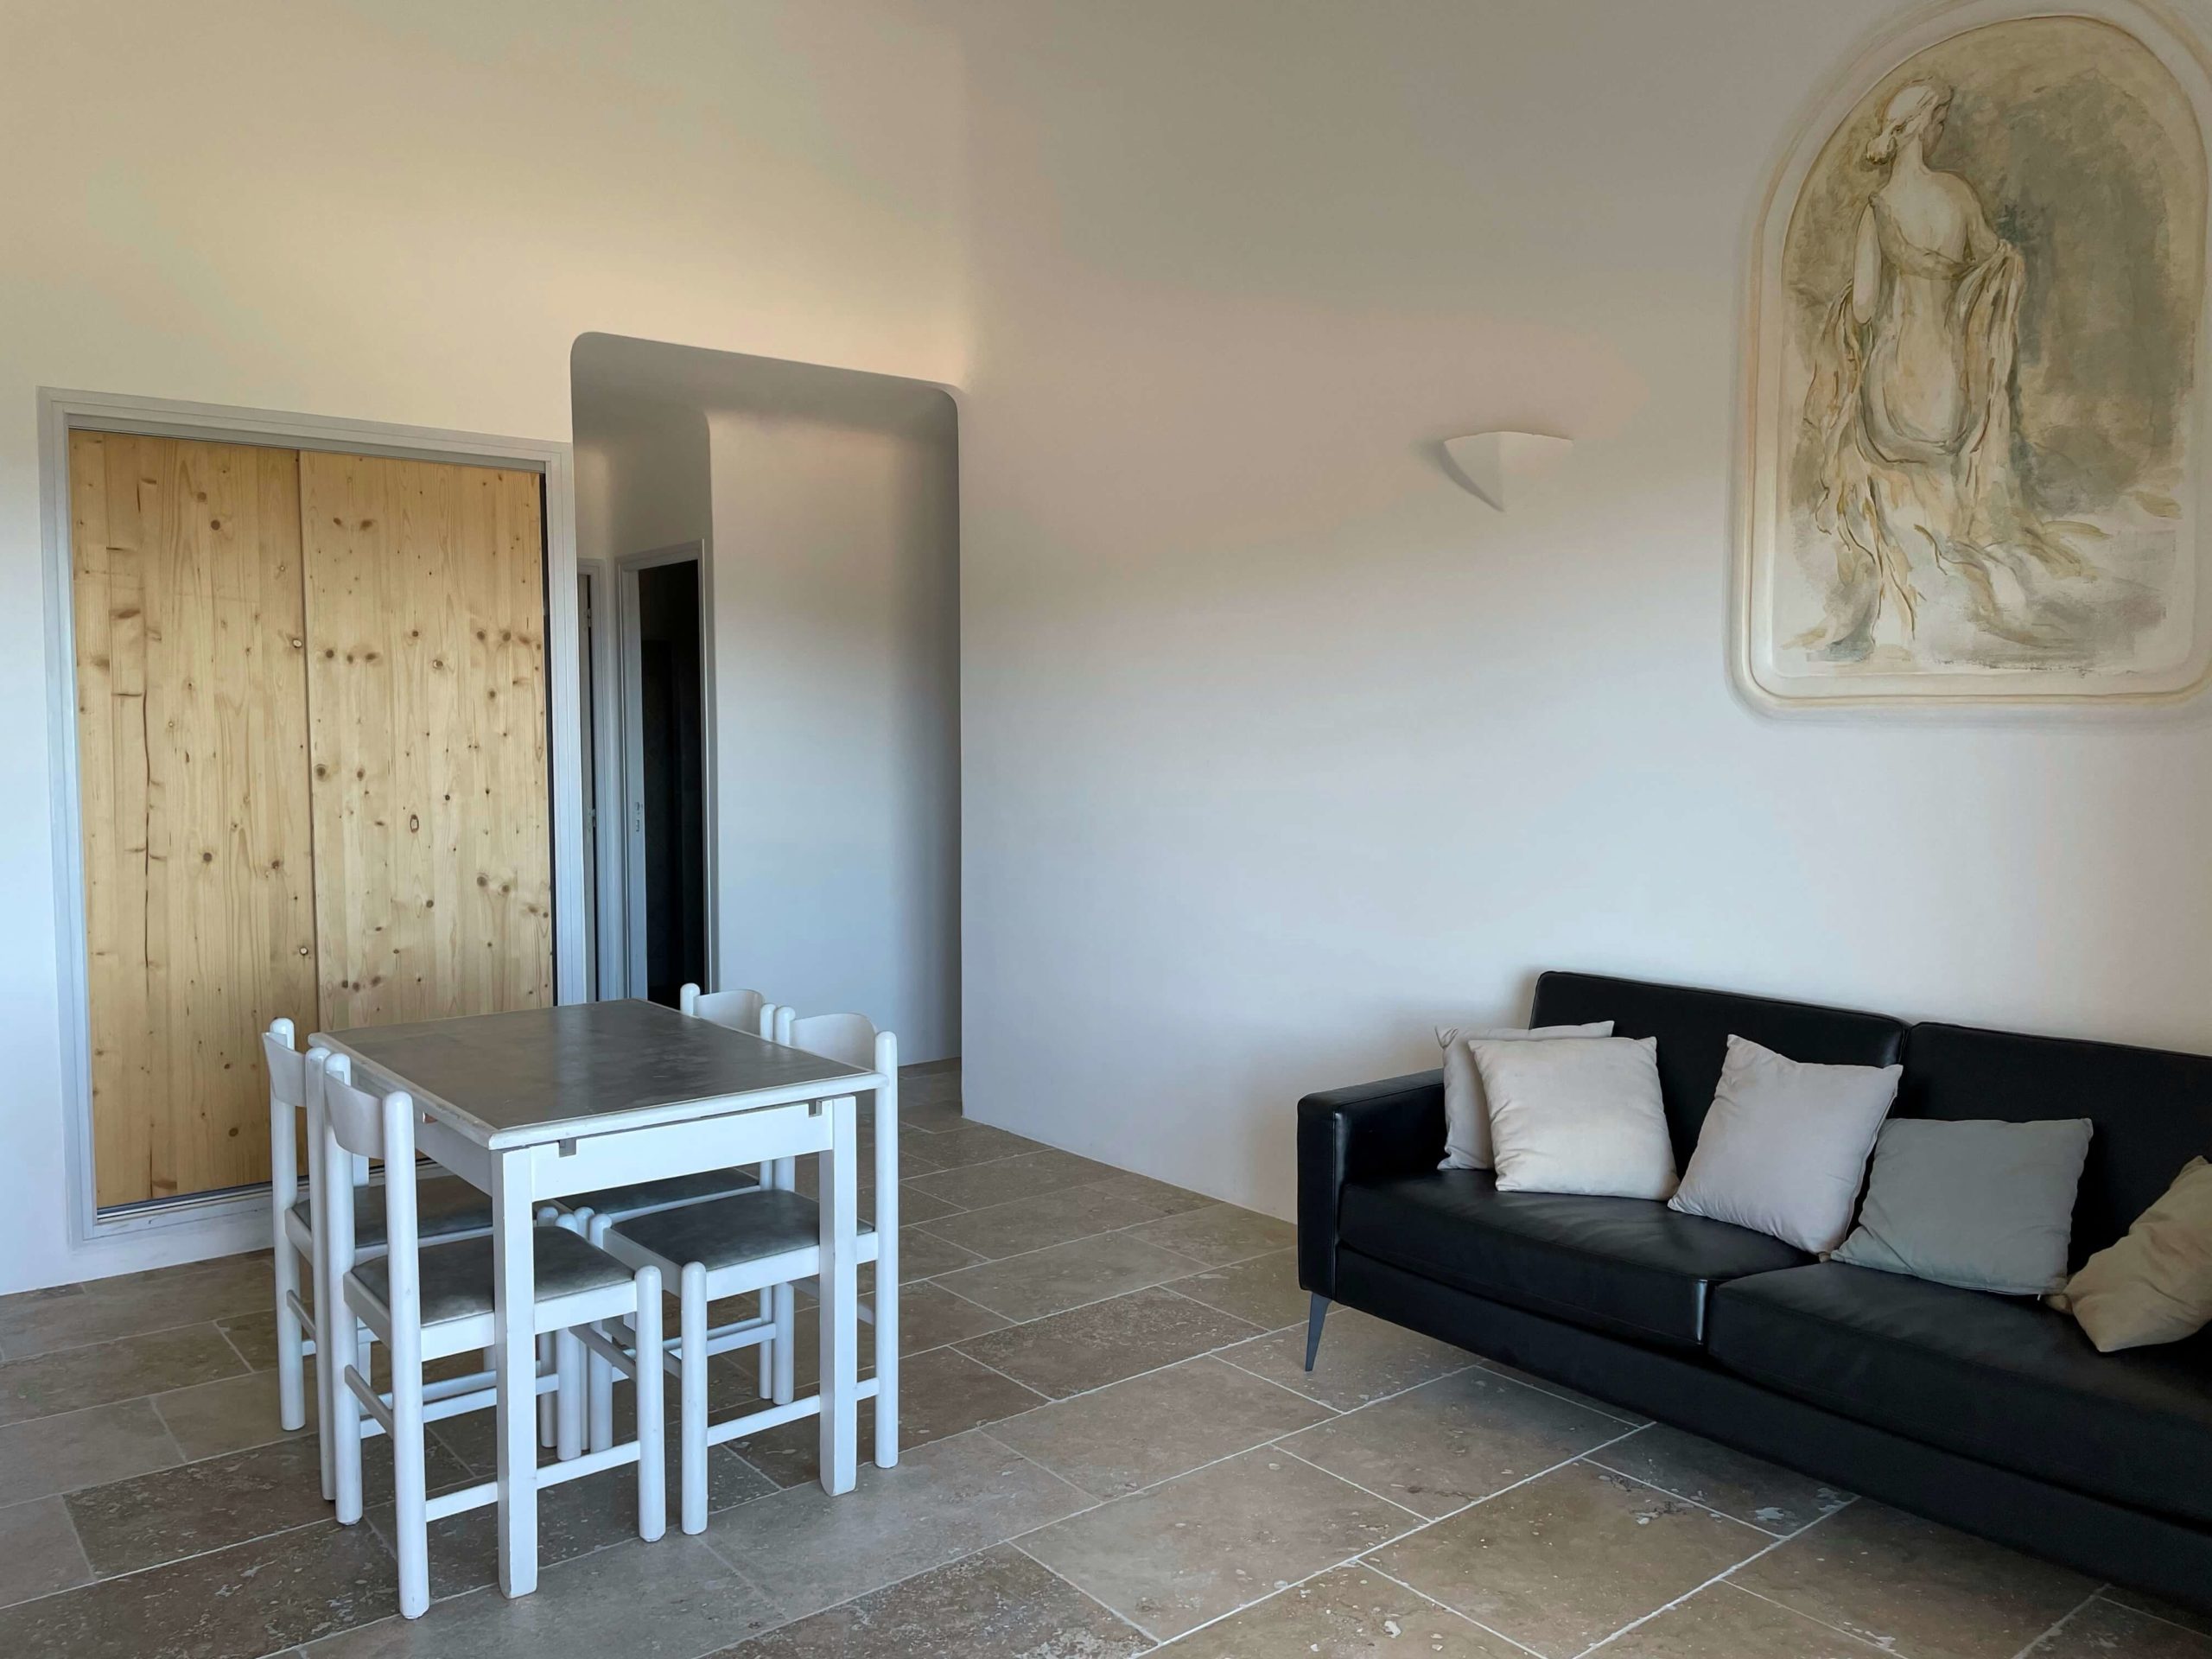 Location appartement en Corse du Sud à Porto-Vecchio, Pietra Di Sole